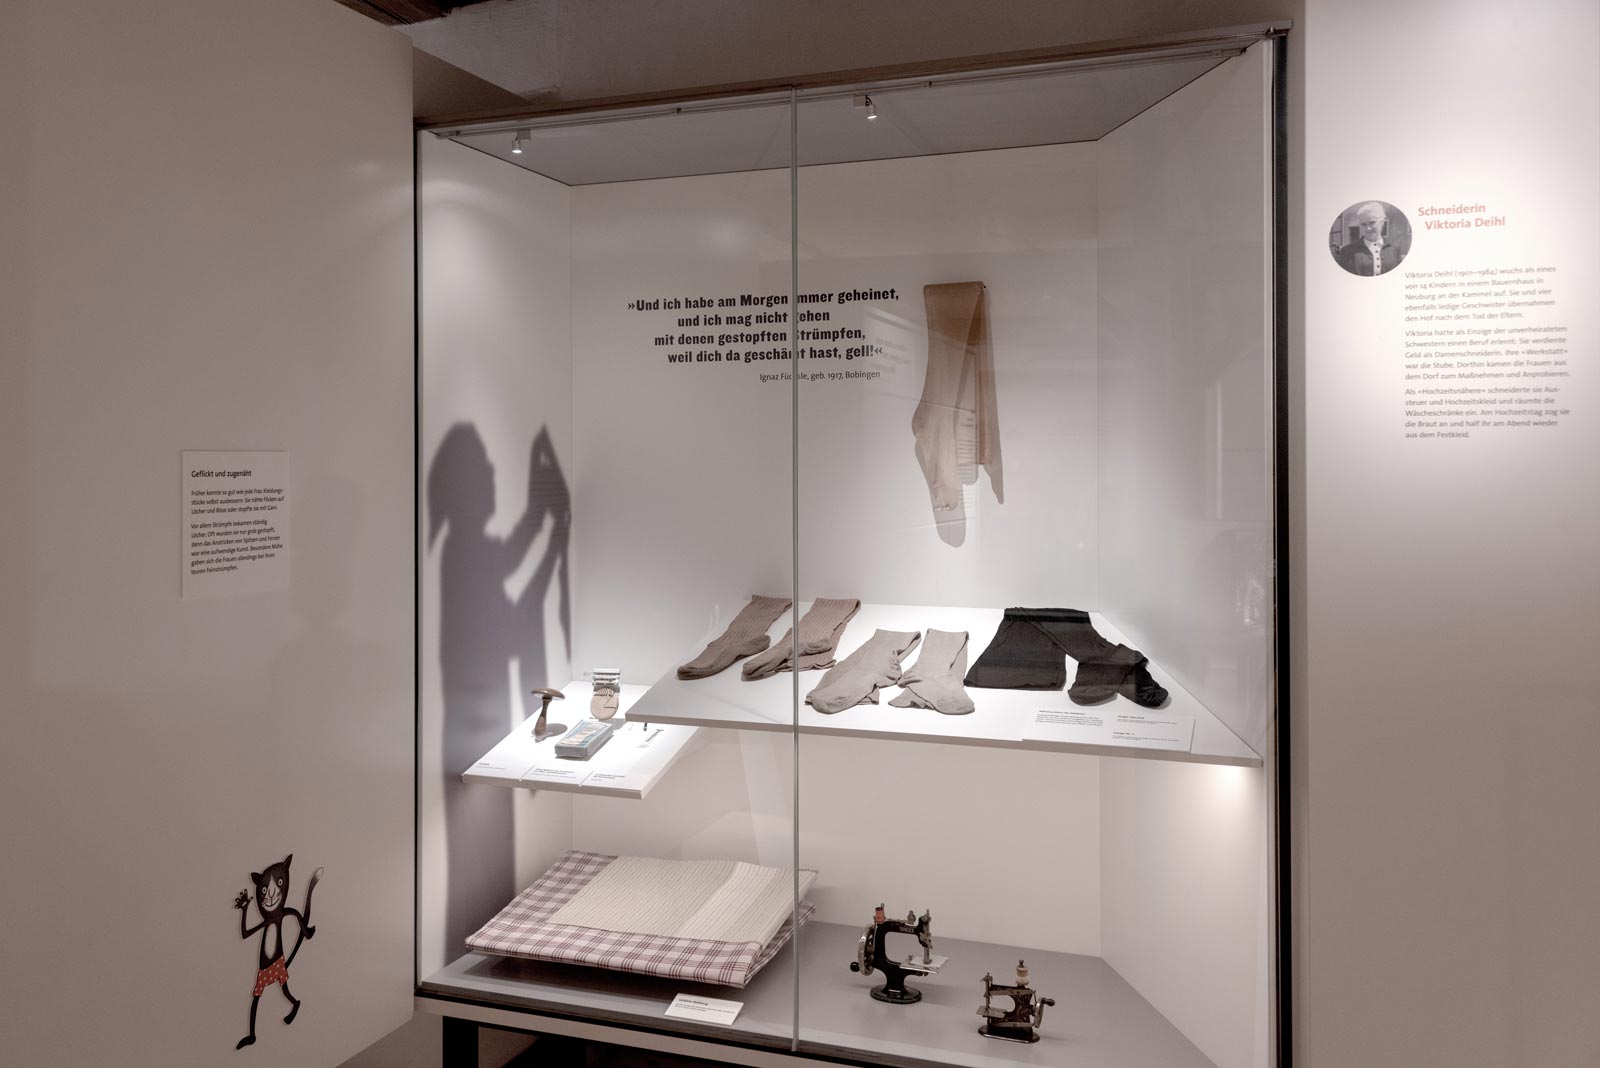 Das Referenzbild für Ausstellungsgestaltung aus der Dauerausstellung Tradition und Umbruch zeigt eine Exponat-Präsentation in einer Einbauvitrine.